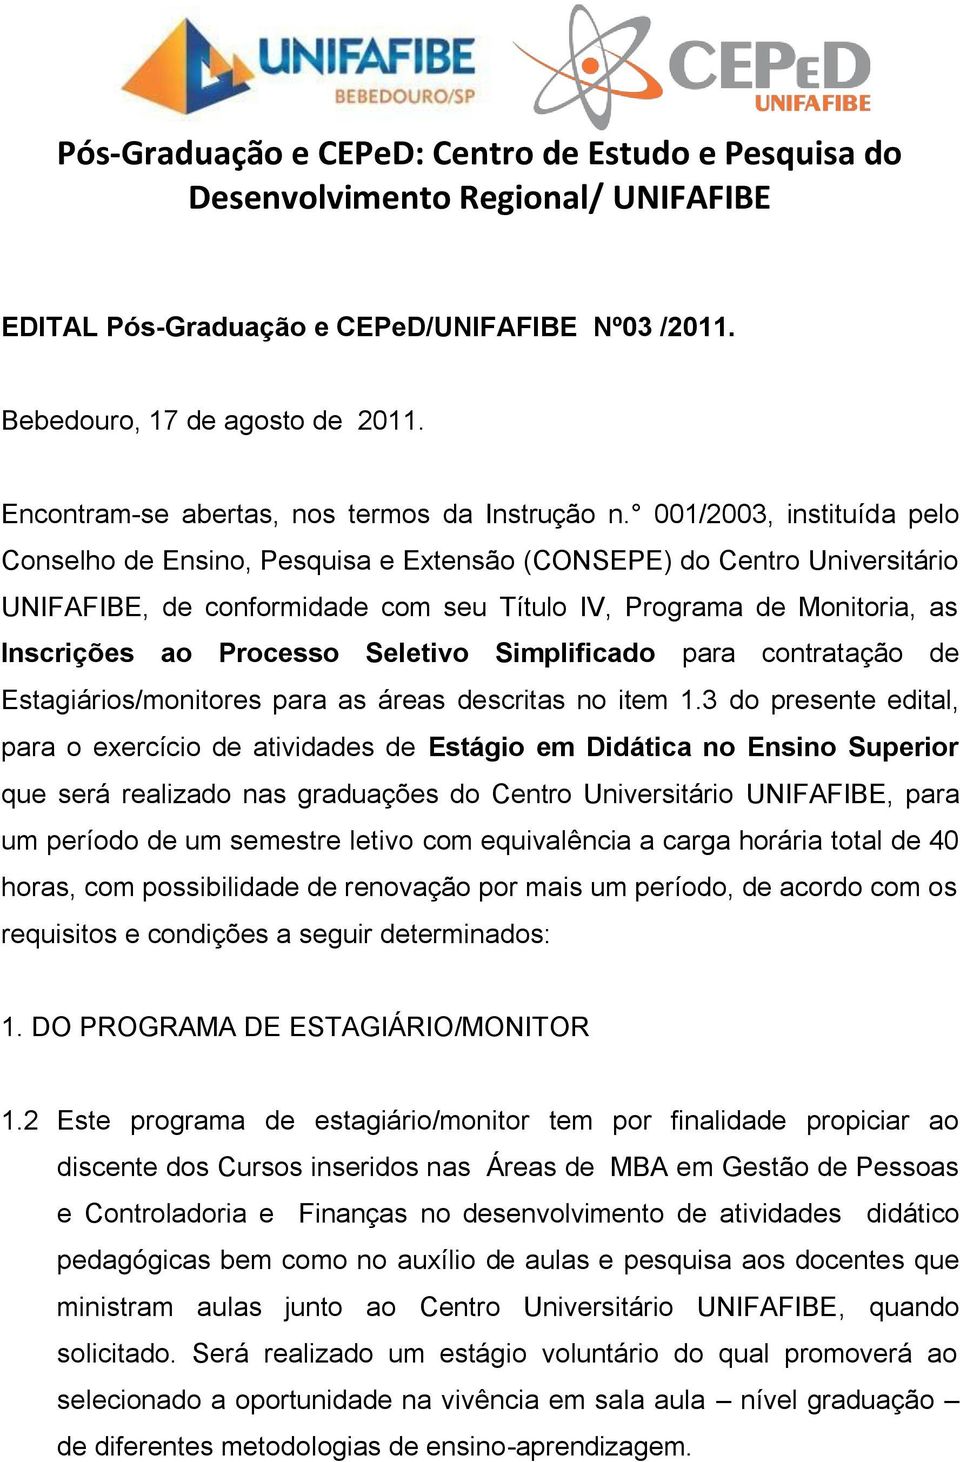 001/2003, instituída pelo Conselho de Ensino, Pesquisa e Extensão (CONSEPE) do Centro Universitário UNIFAFIBE, de conformidade com seu Título IV, Programa de Monitoria, as Inscrições ao Processo